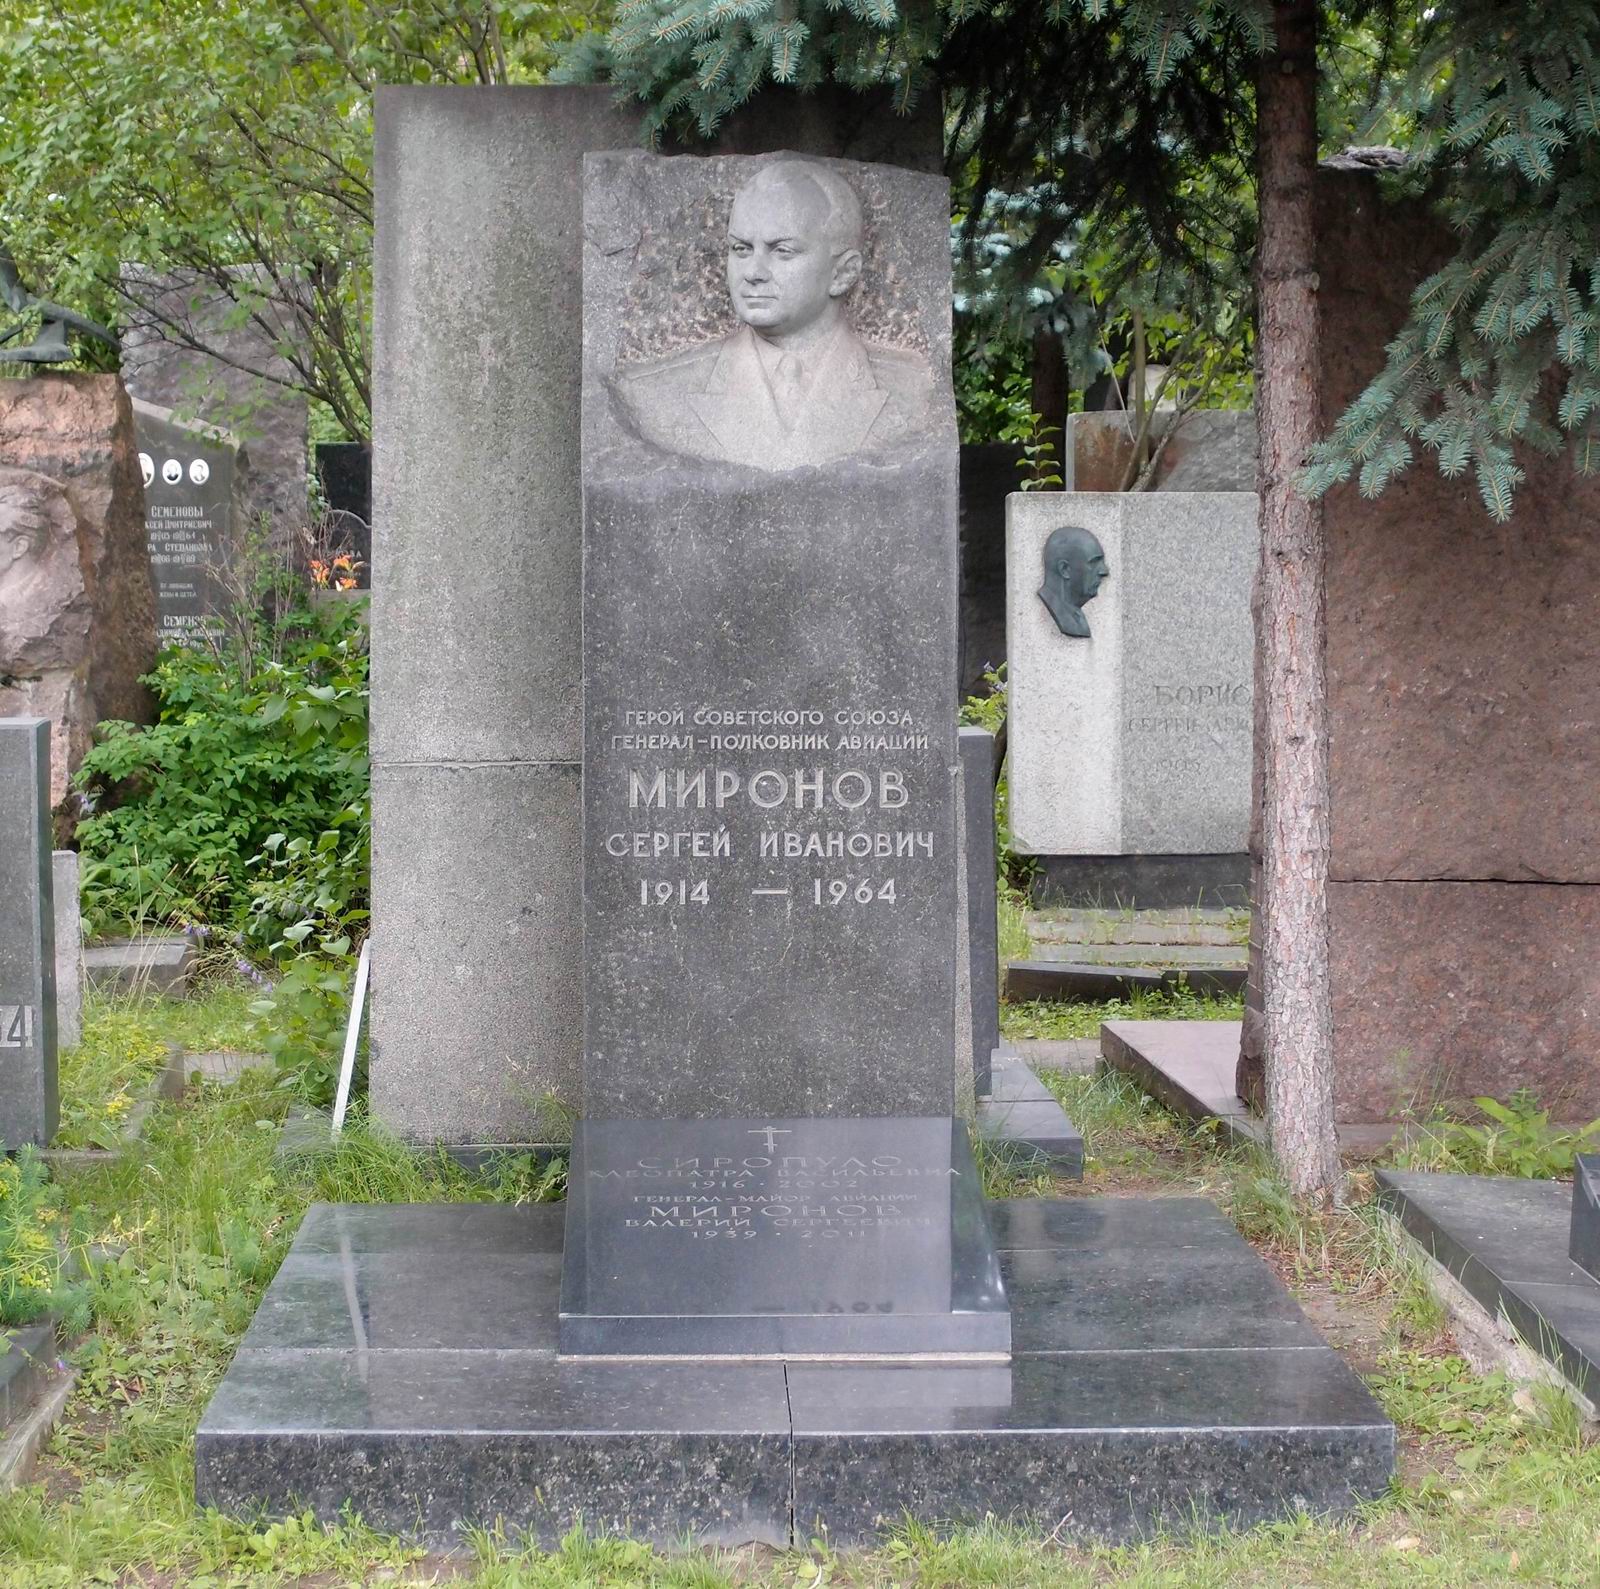 Памятник на могиле Миронова С.И. (1914-1964), на Новодевичьем кладбище (6-9-2). Нажмите левую кнопку мыши, чтобы увидеть фрагмент памятника крупно.